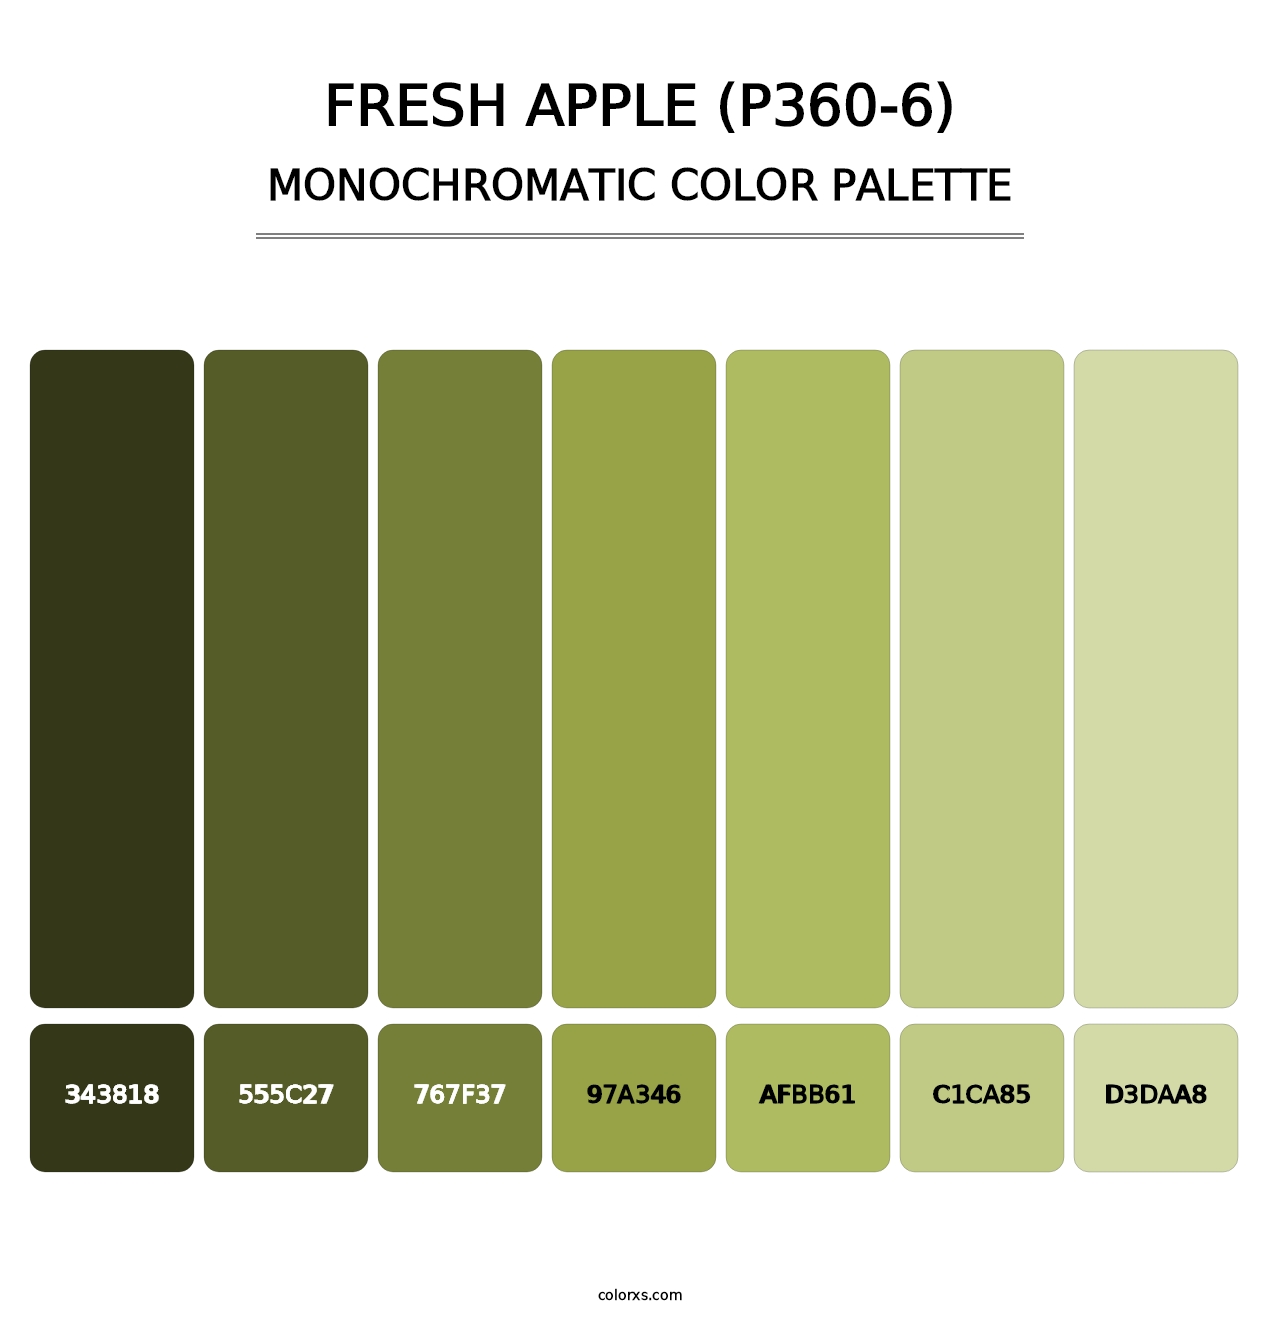 Fresh Apple (P360-6) - Monochromatic Color Palette